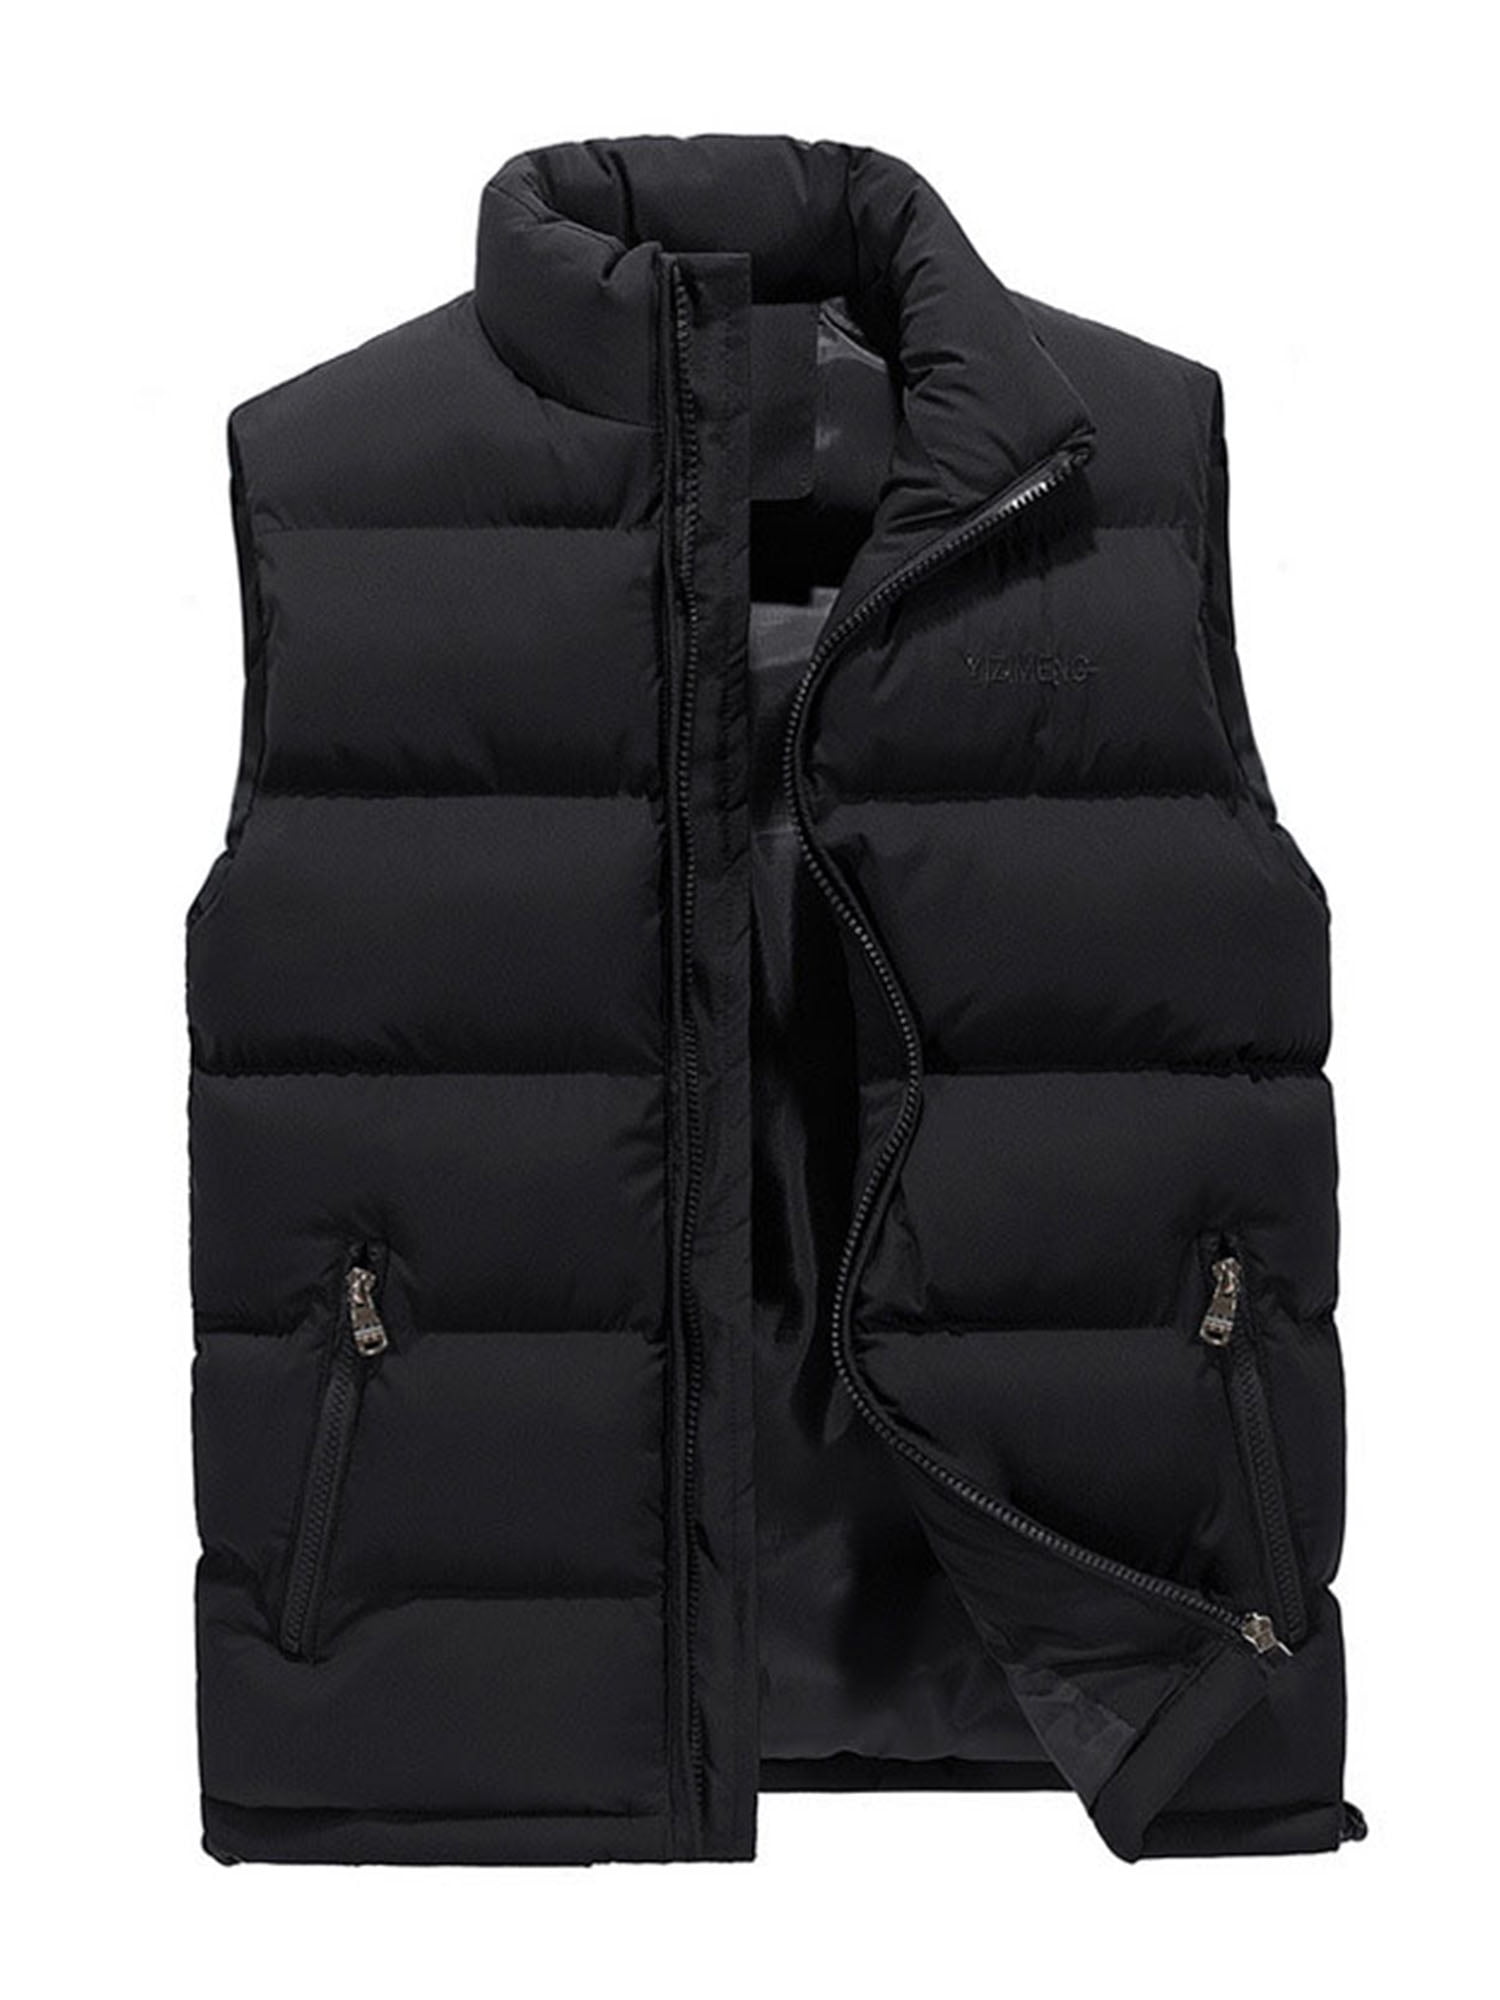 Mens Fall Winter Down Vest Light-midweight Sleeveless Puffer Coats Jackets Stylish Warm Zipper Stand-Up Collar Outerwar 